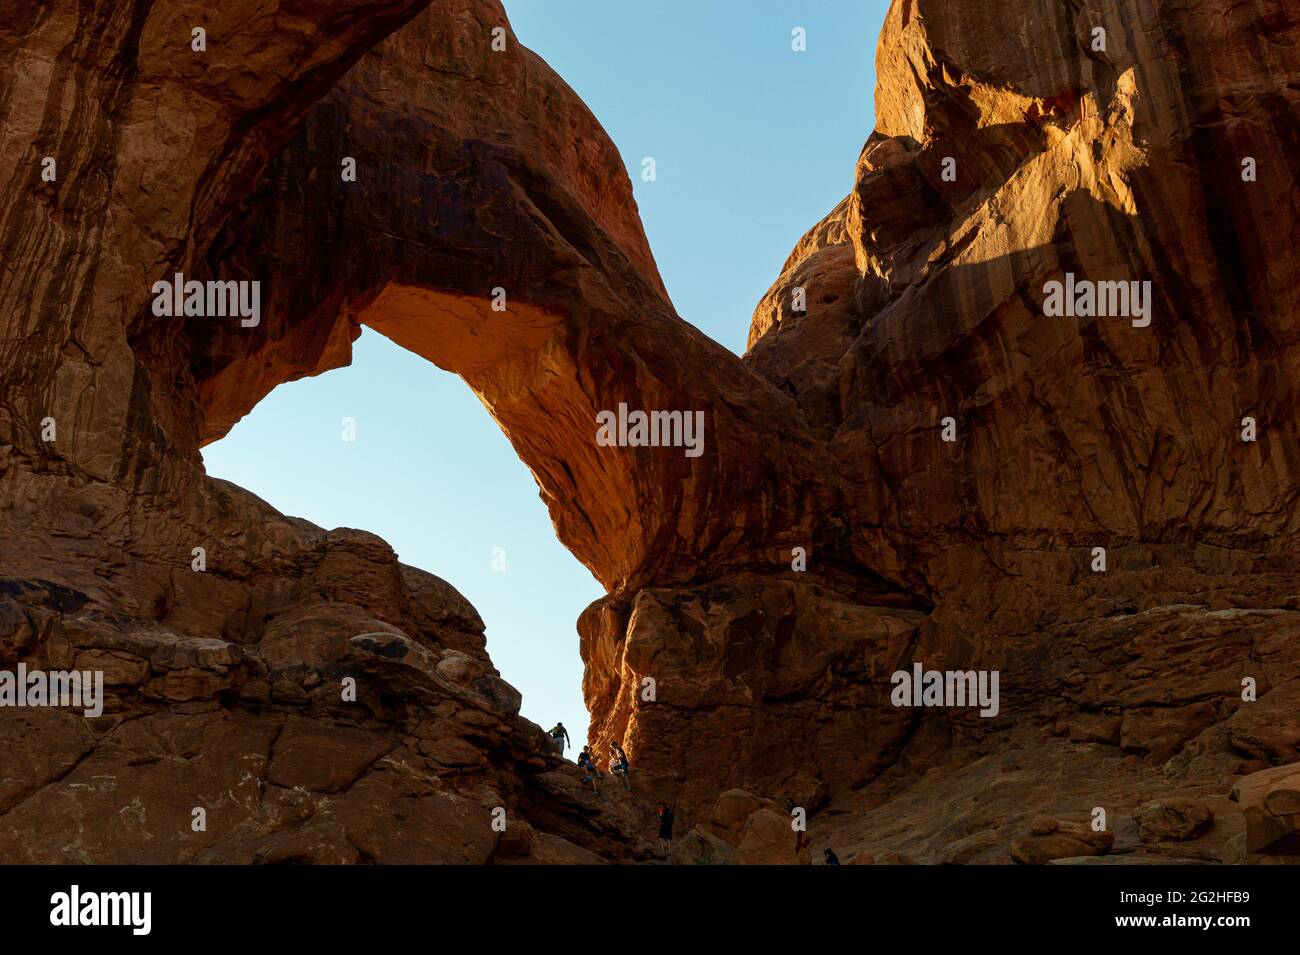 Der berühmte Double Arch - eine Sandsteinformation und beliebter Fotospot mit zwei großen Bögen, die vom gleichen Seitenfundament entspringen - ist bekannt für Vorder- und Rückspannen im Arches National Park, in der Nähe von Moab in Utah, USA Stockfoto